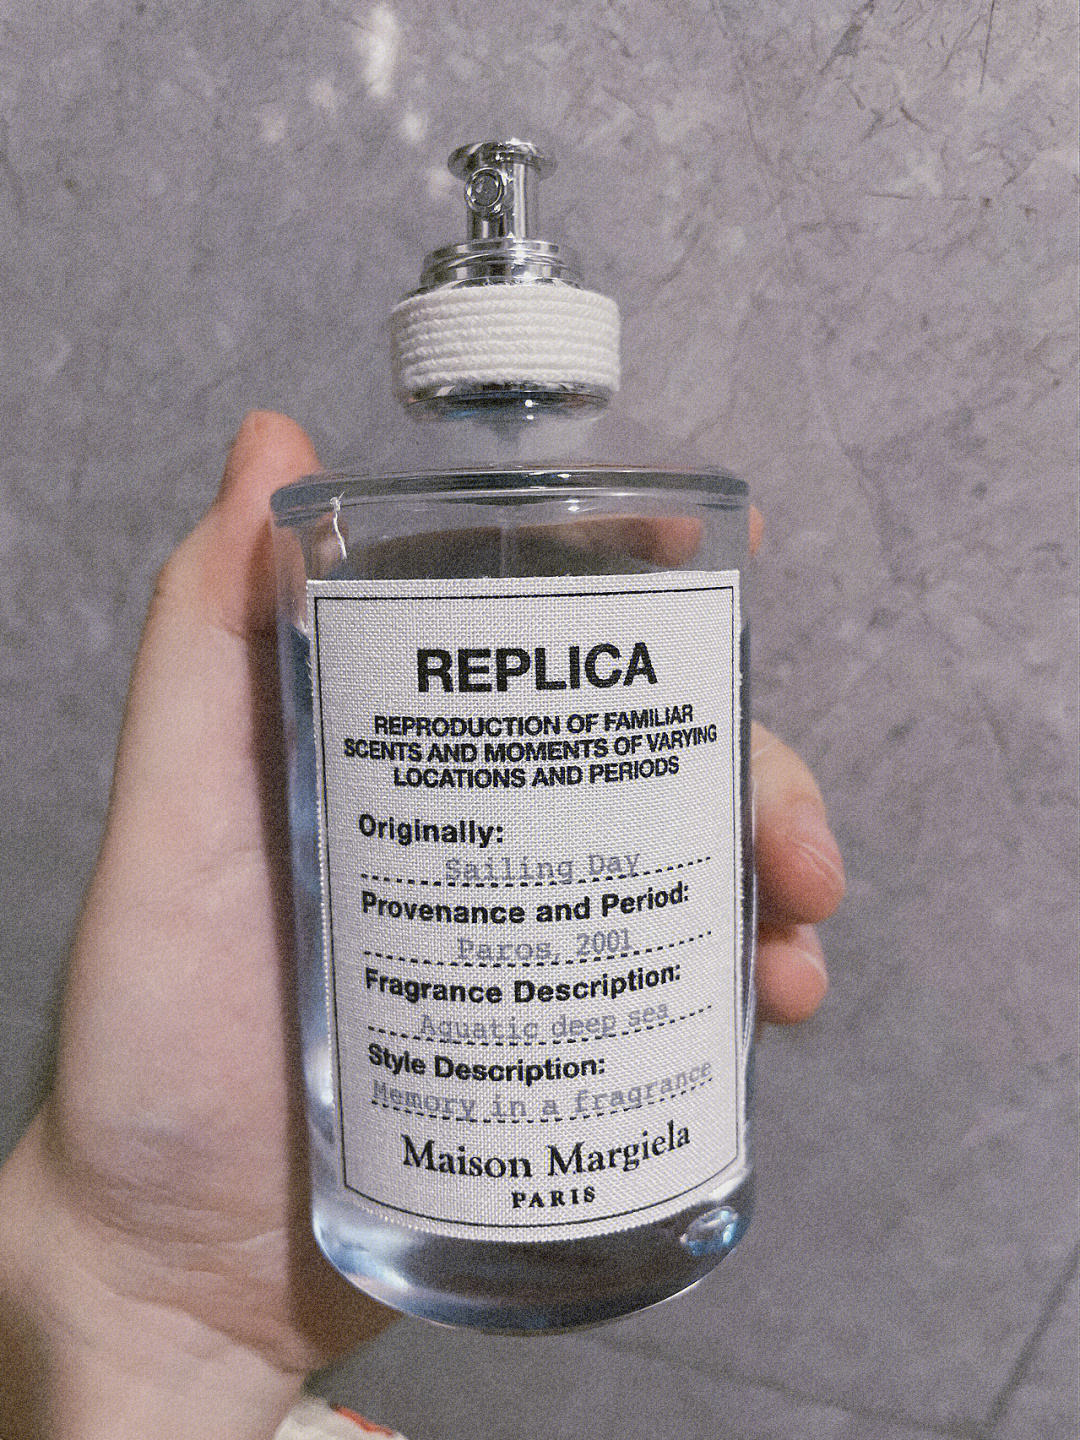 梅森马吉拉香水规格图片